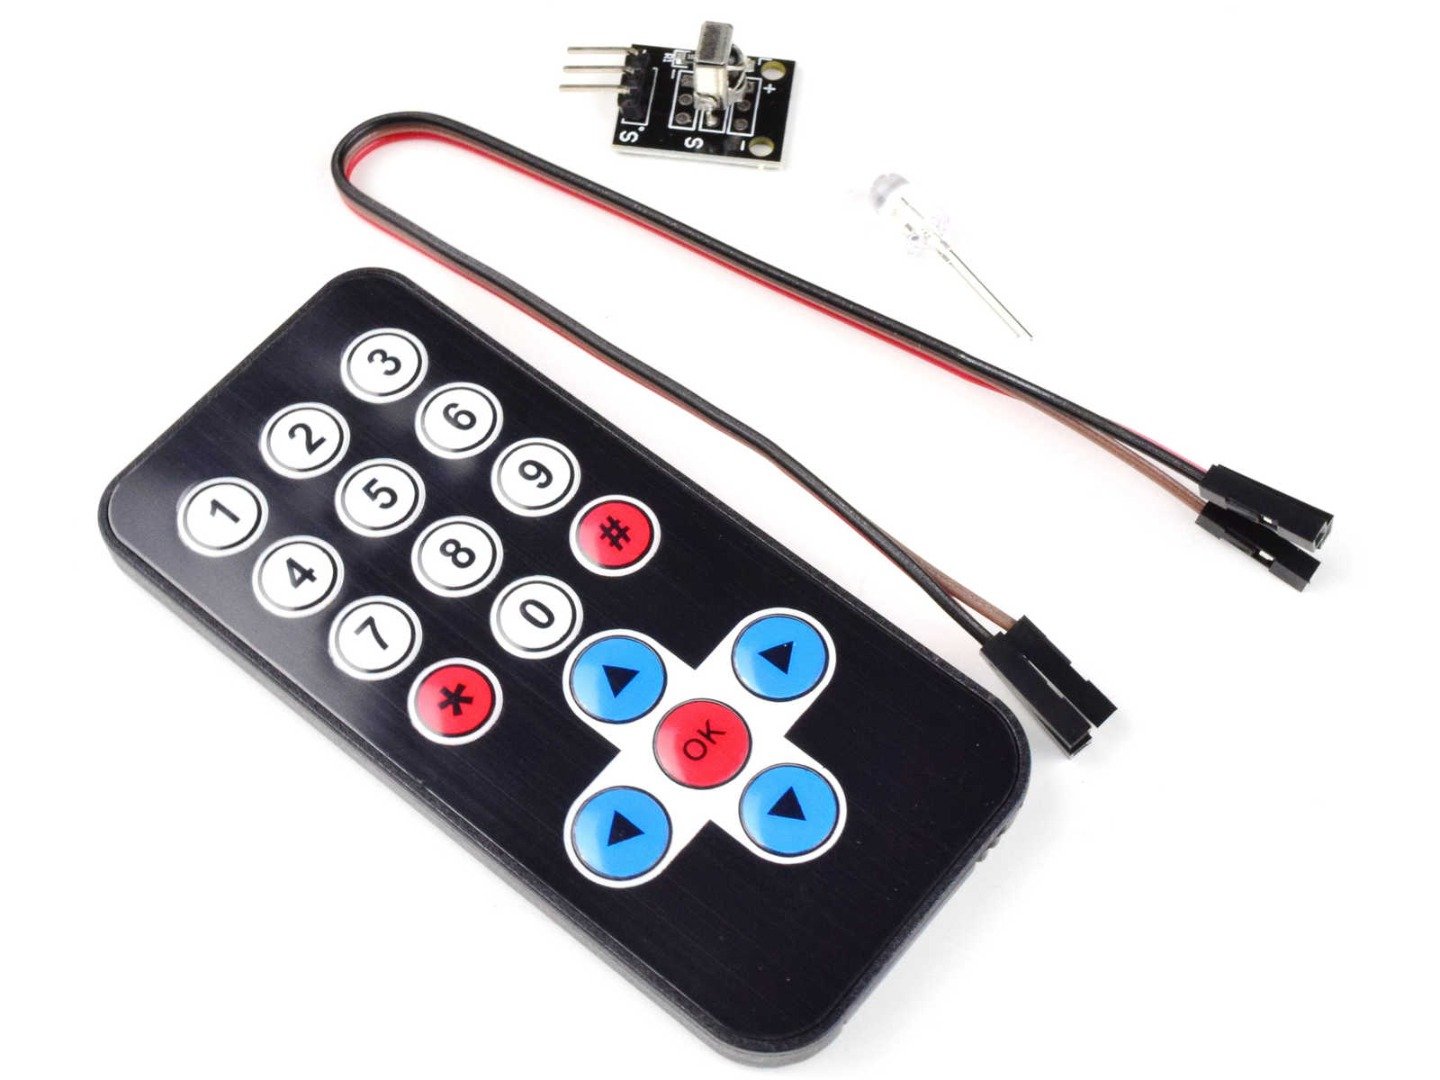 IR Remote Control Sender Receiver Kit for Arduino etc. 9